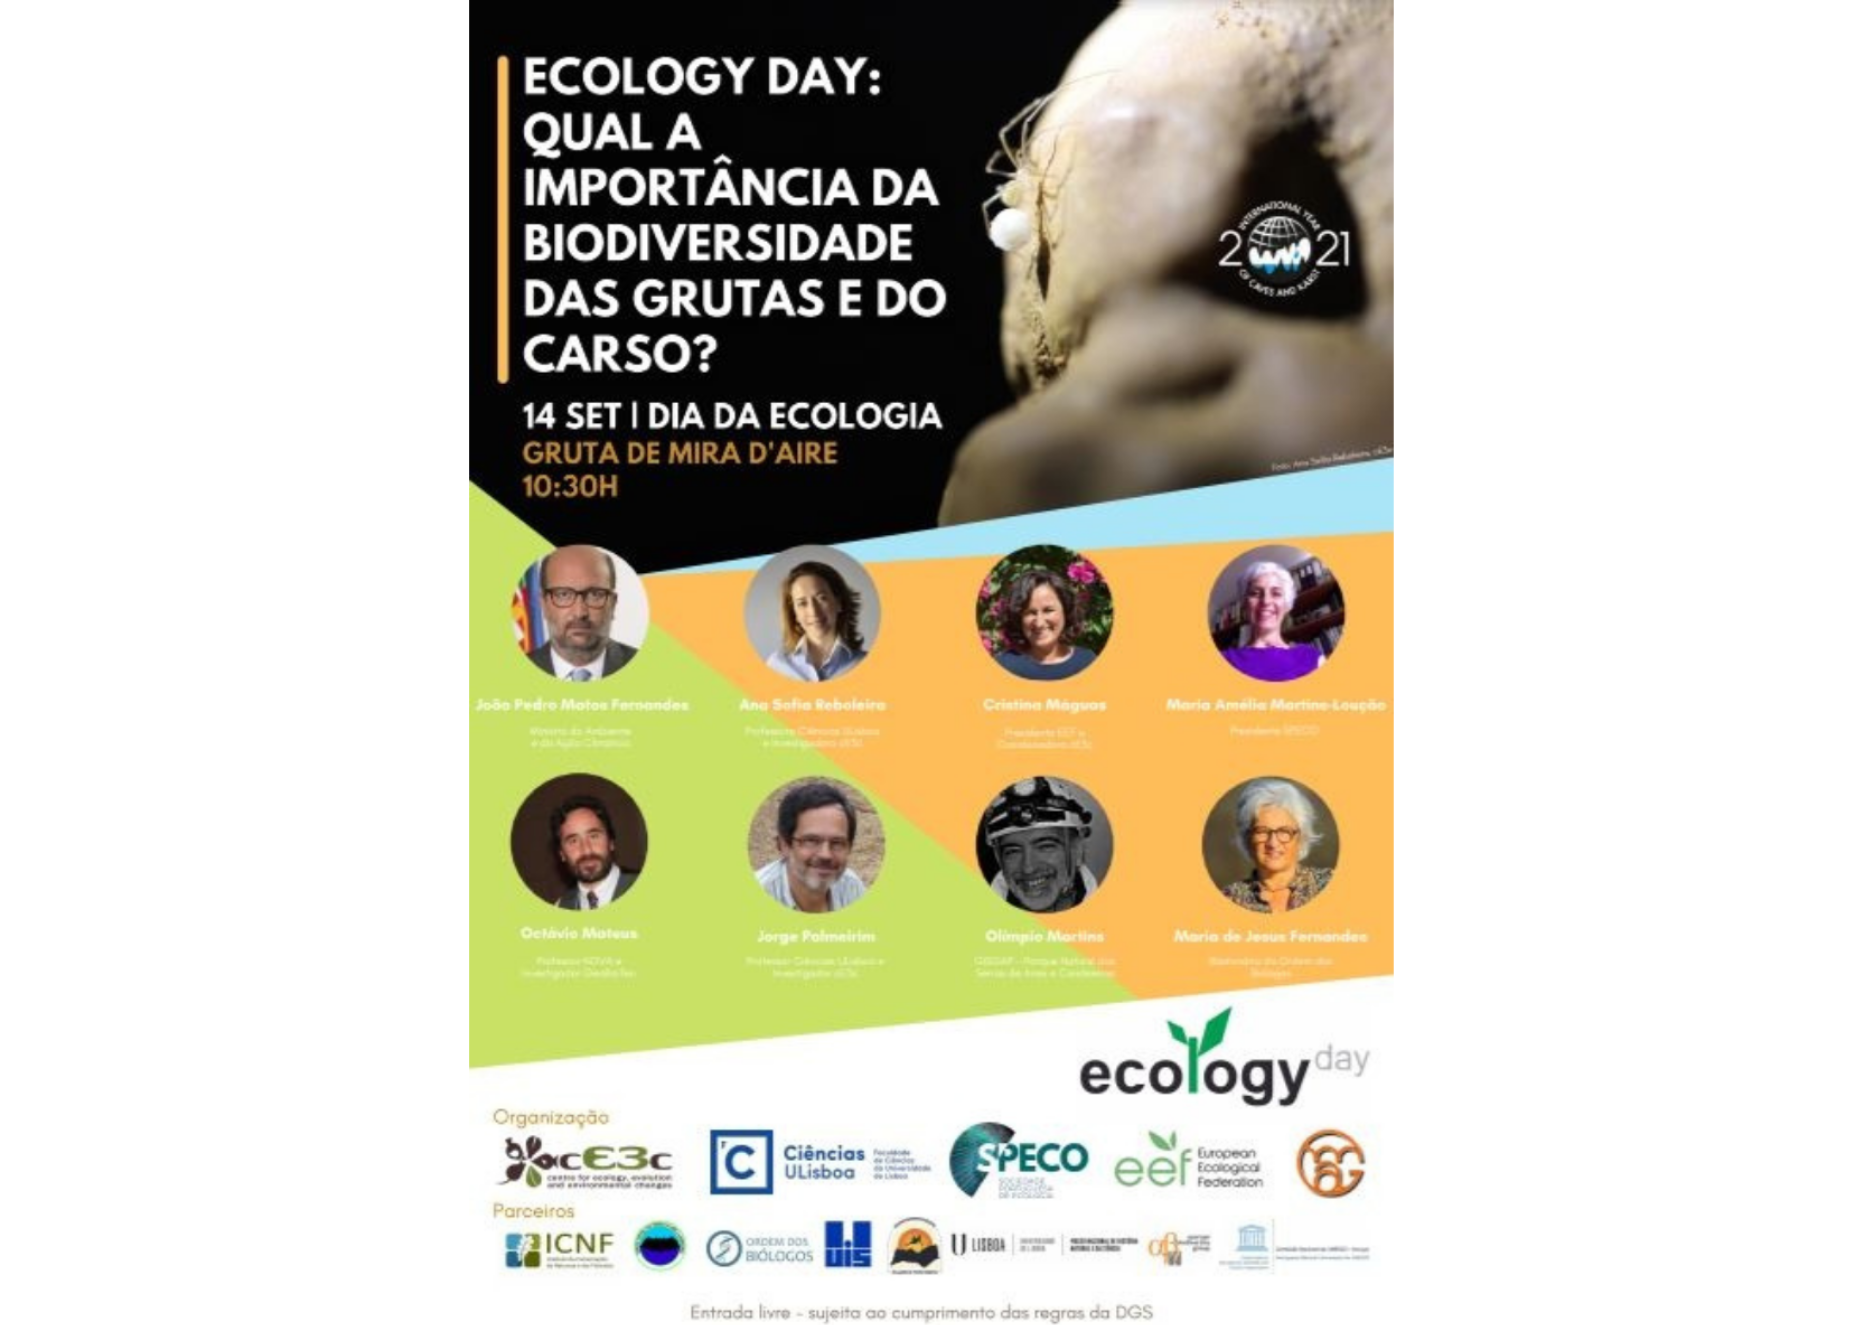 Ecology Day: Qual a importância da biodiversidade das grutas e do carso?